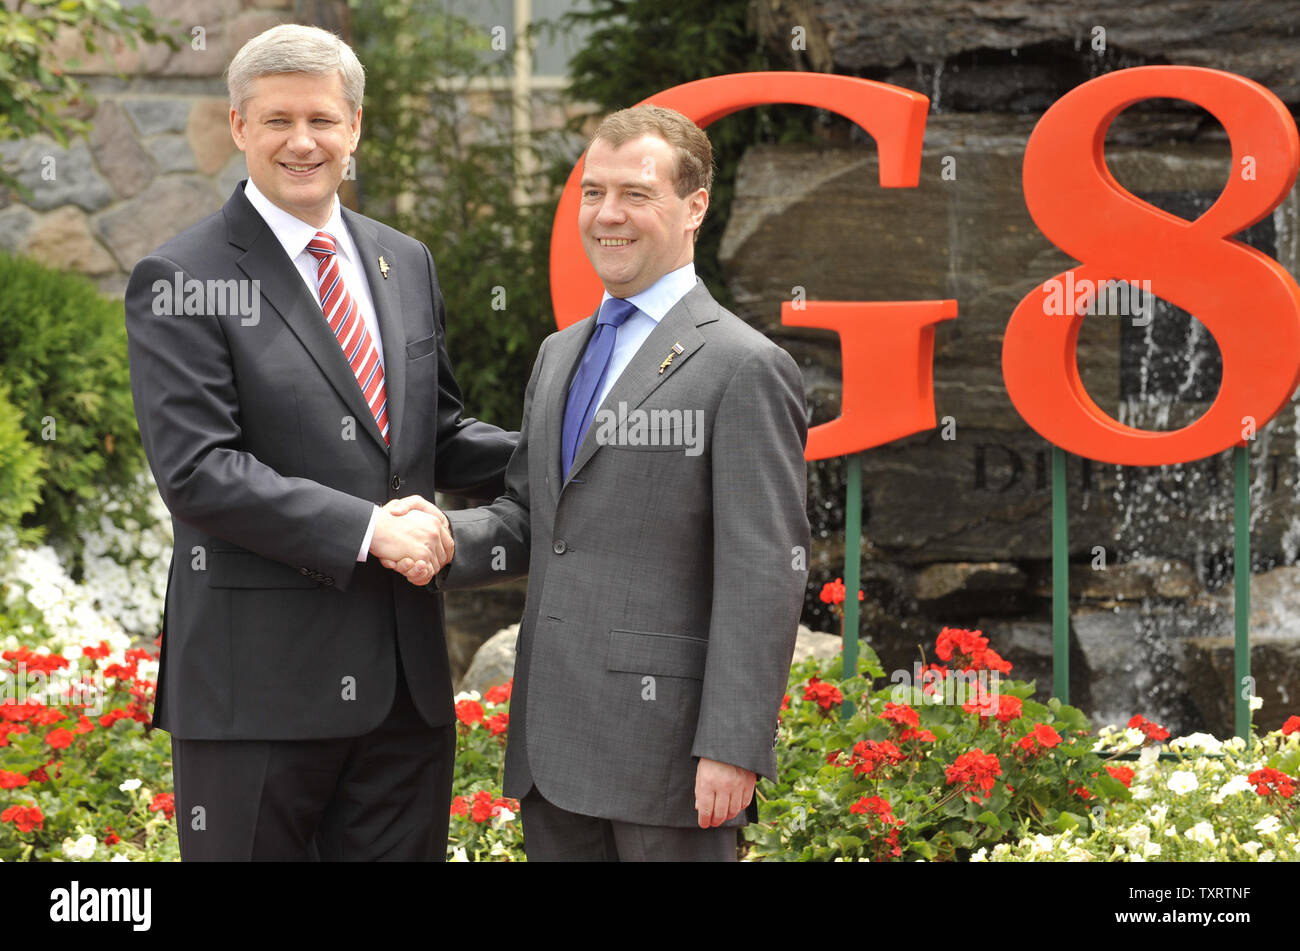 Kanadische Premierminister Stephen Harper (L) begrüßt der russische Präsident Dmitri Medwedew auf den G8-Gipfel am Deerhurst Resort in Huntsville, Ontario am 25. Juni 2010. UPI Foto/Alex Volgin Stockfoto